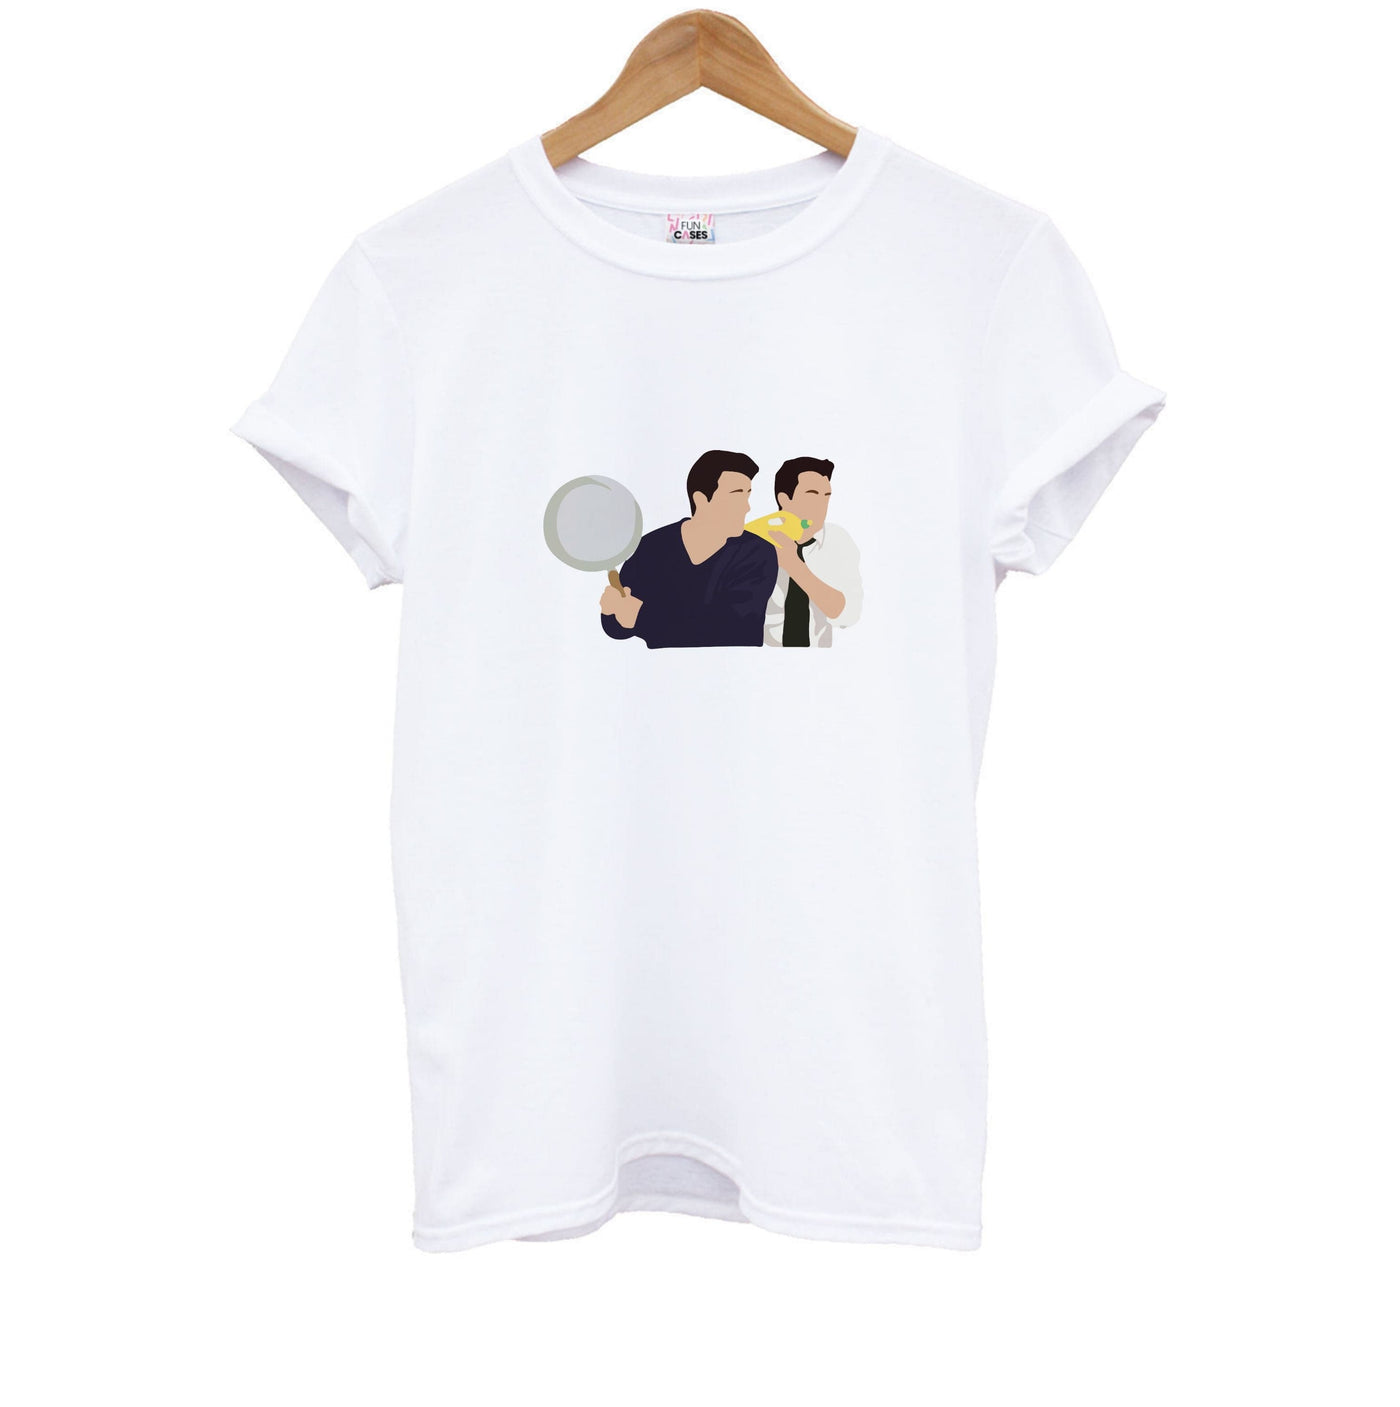 Saucepan - Friends Kids T-Shirt